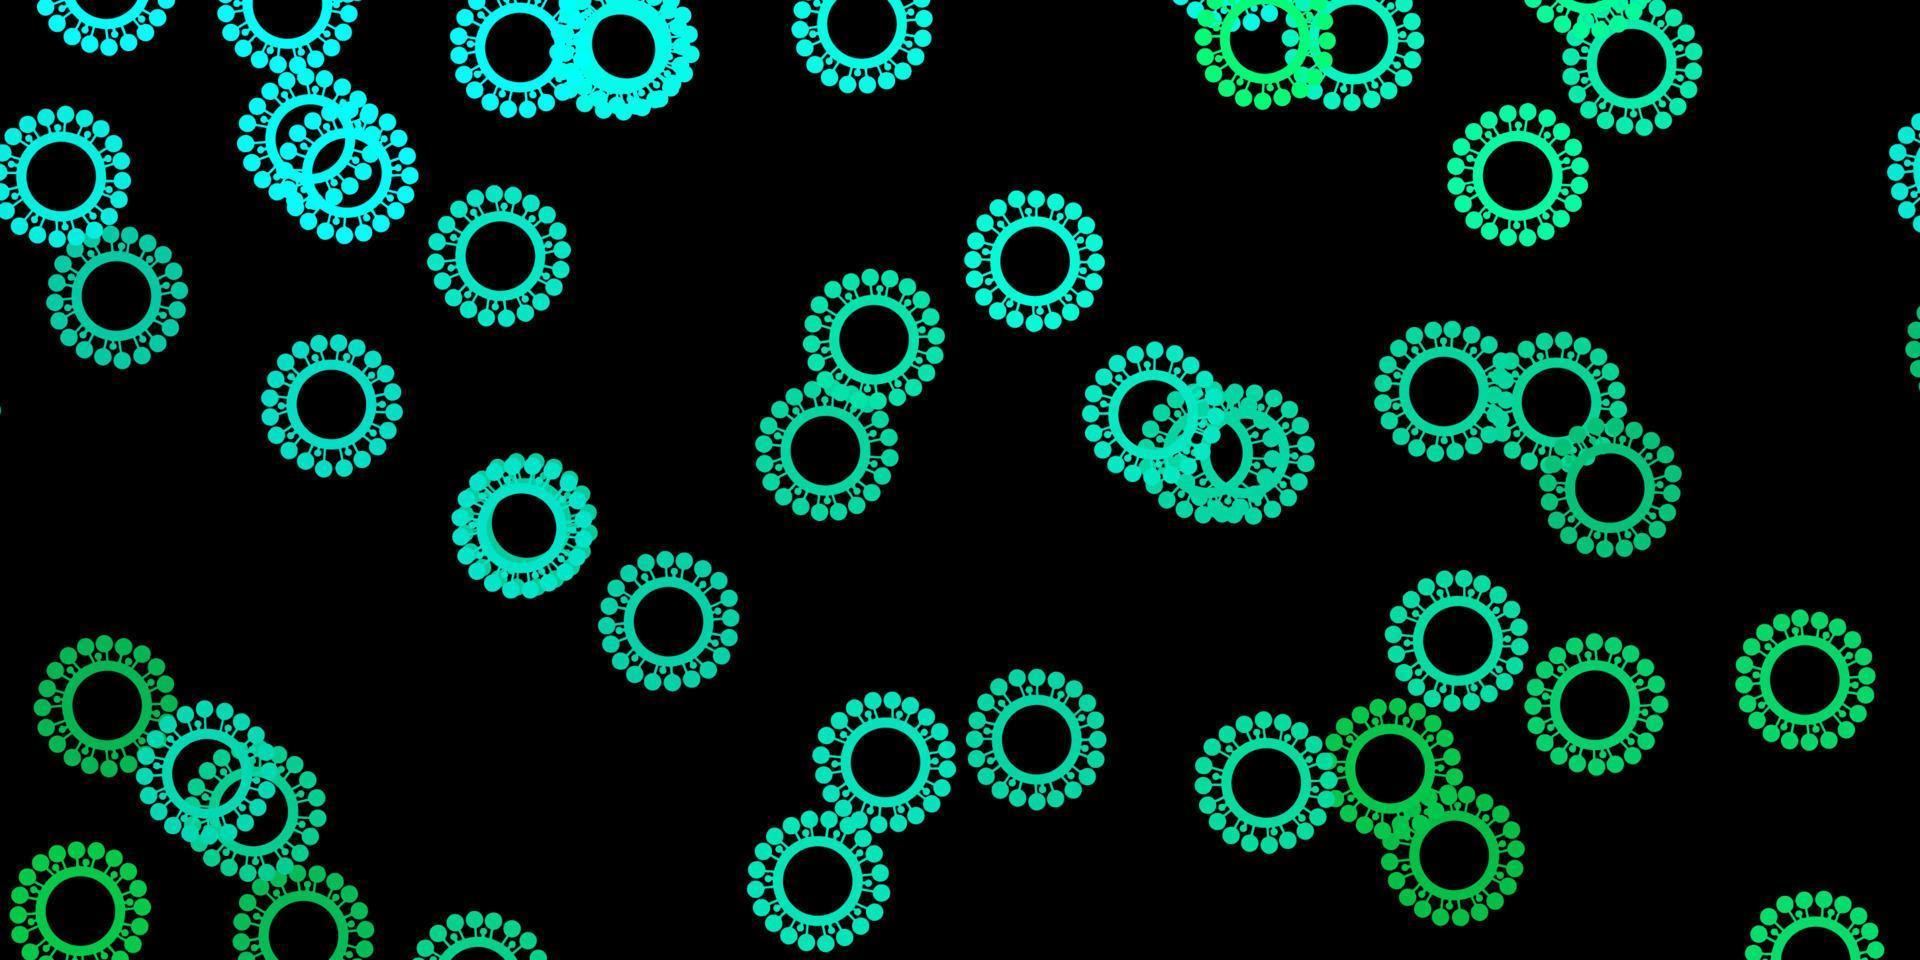 de fundo vector verde escuro com covid-19 símbolos.